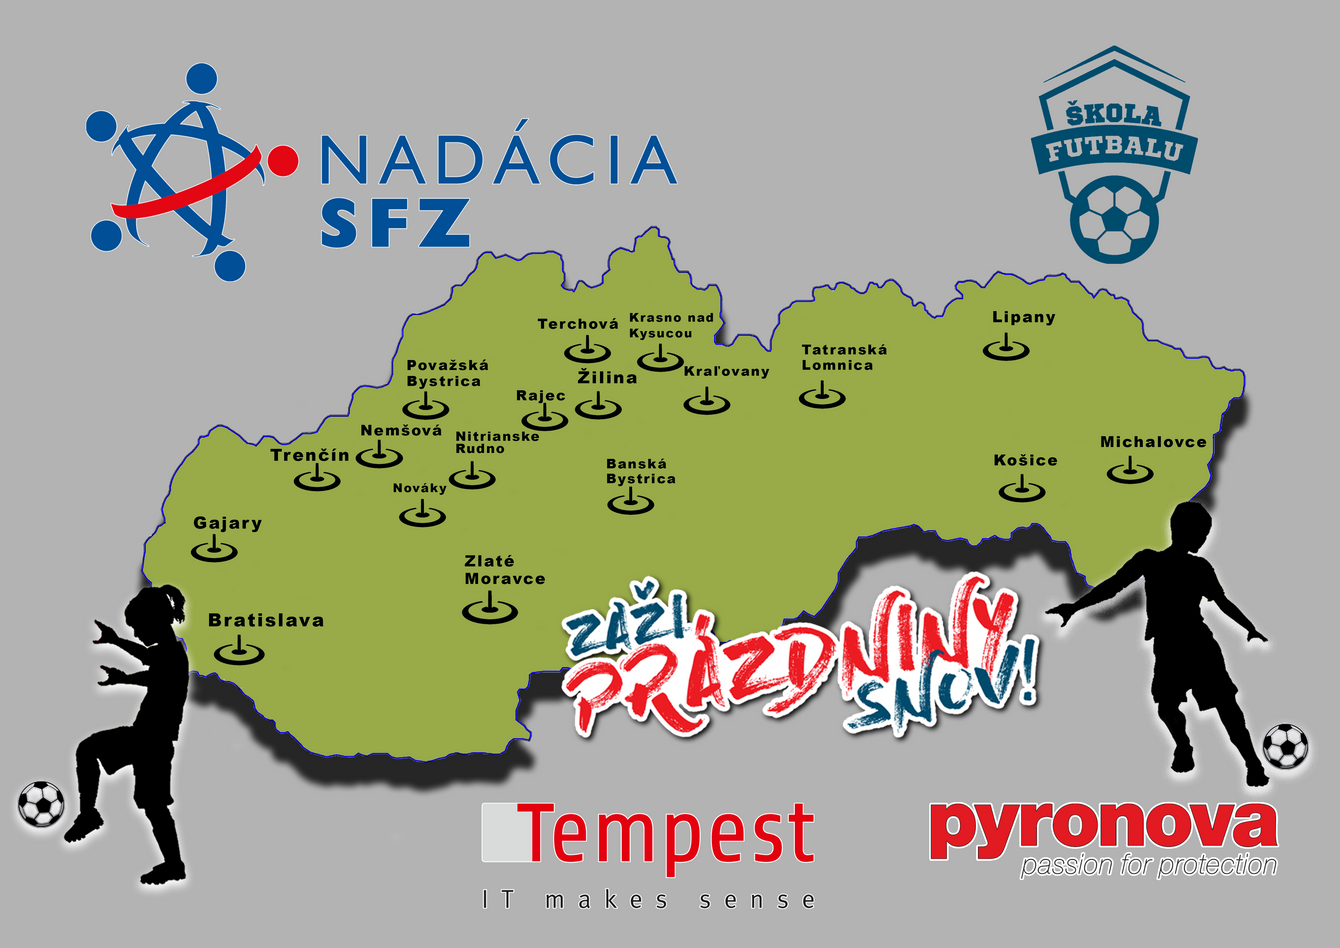 Deti si budú môcť vyberať futbalové kempy v rámci celého Slovenska.